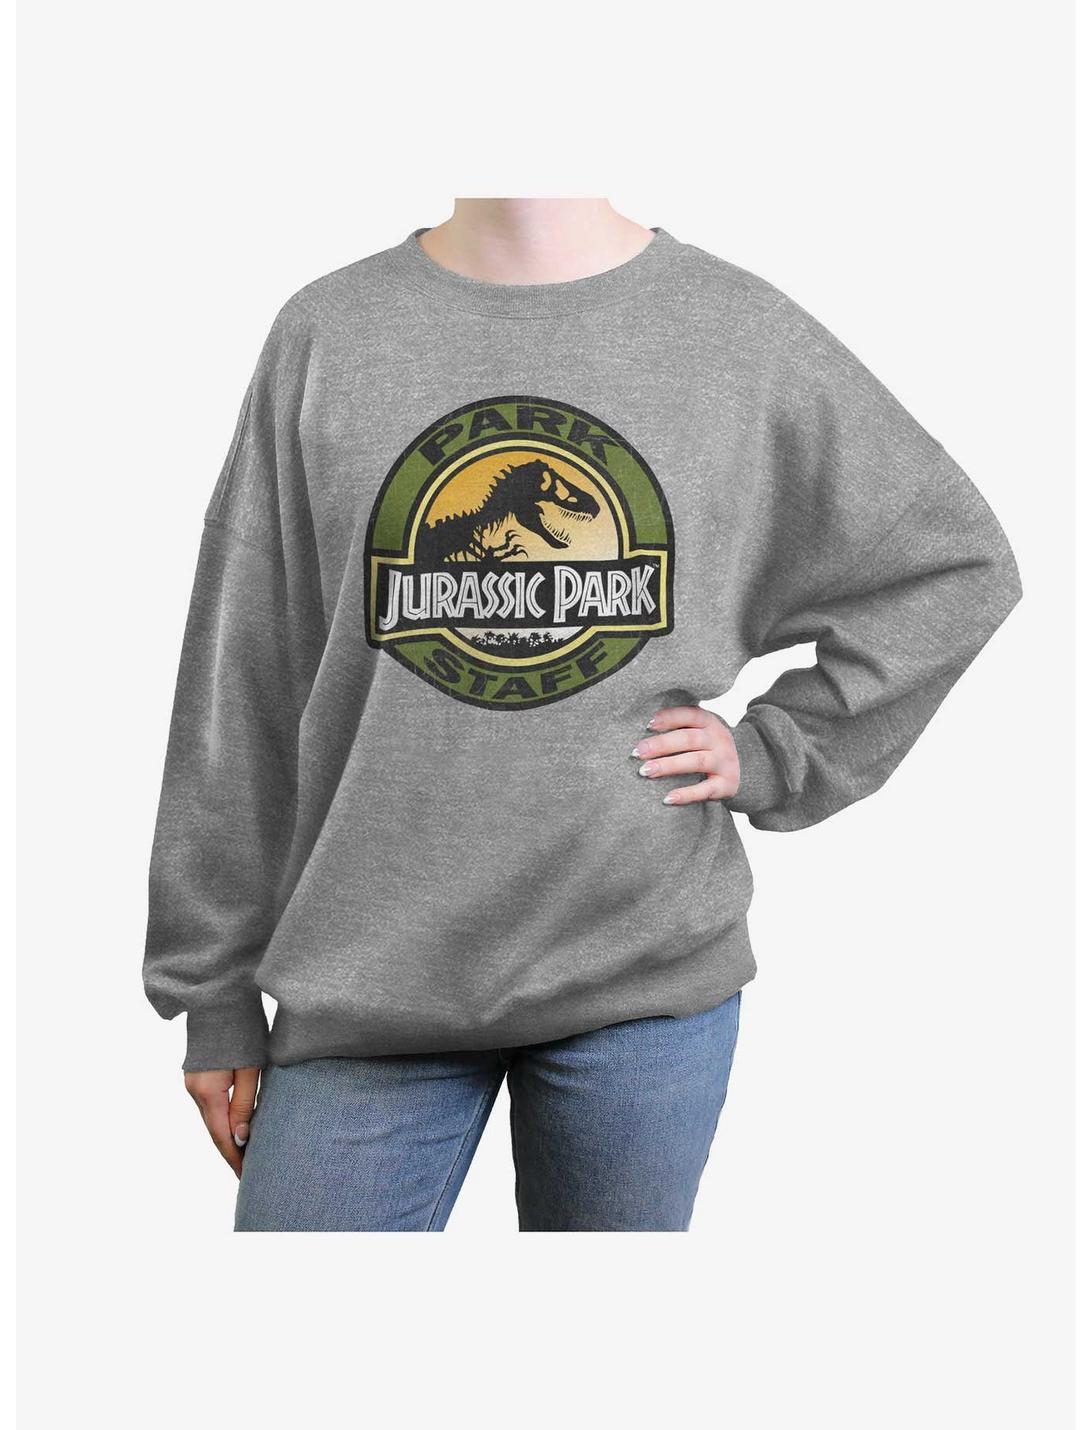 Jurassic Park Staff Girls Oversized Sweatshirt, HEATHER GR, hi-res